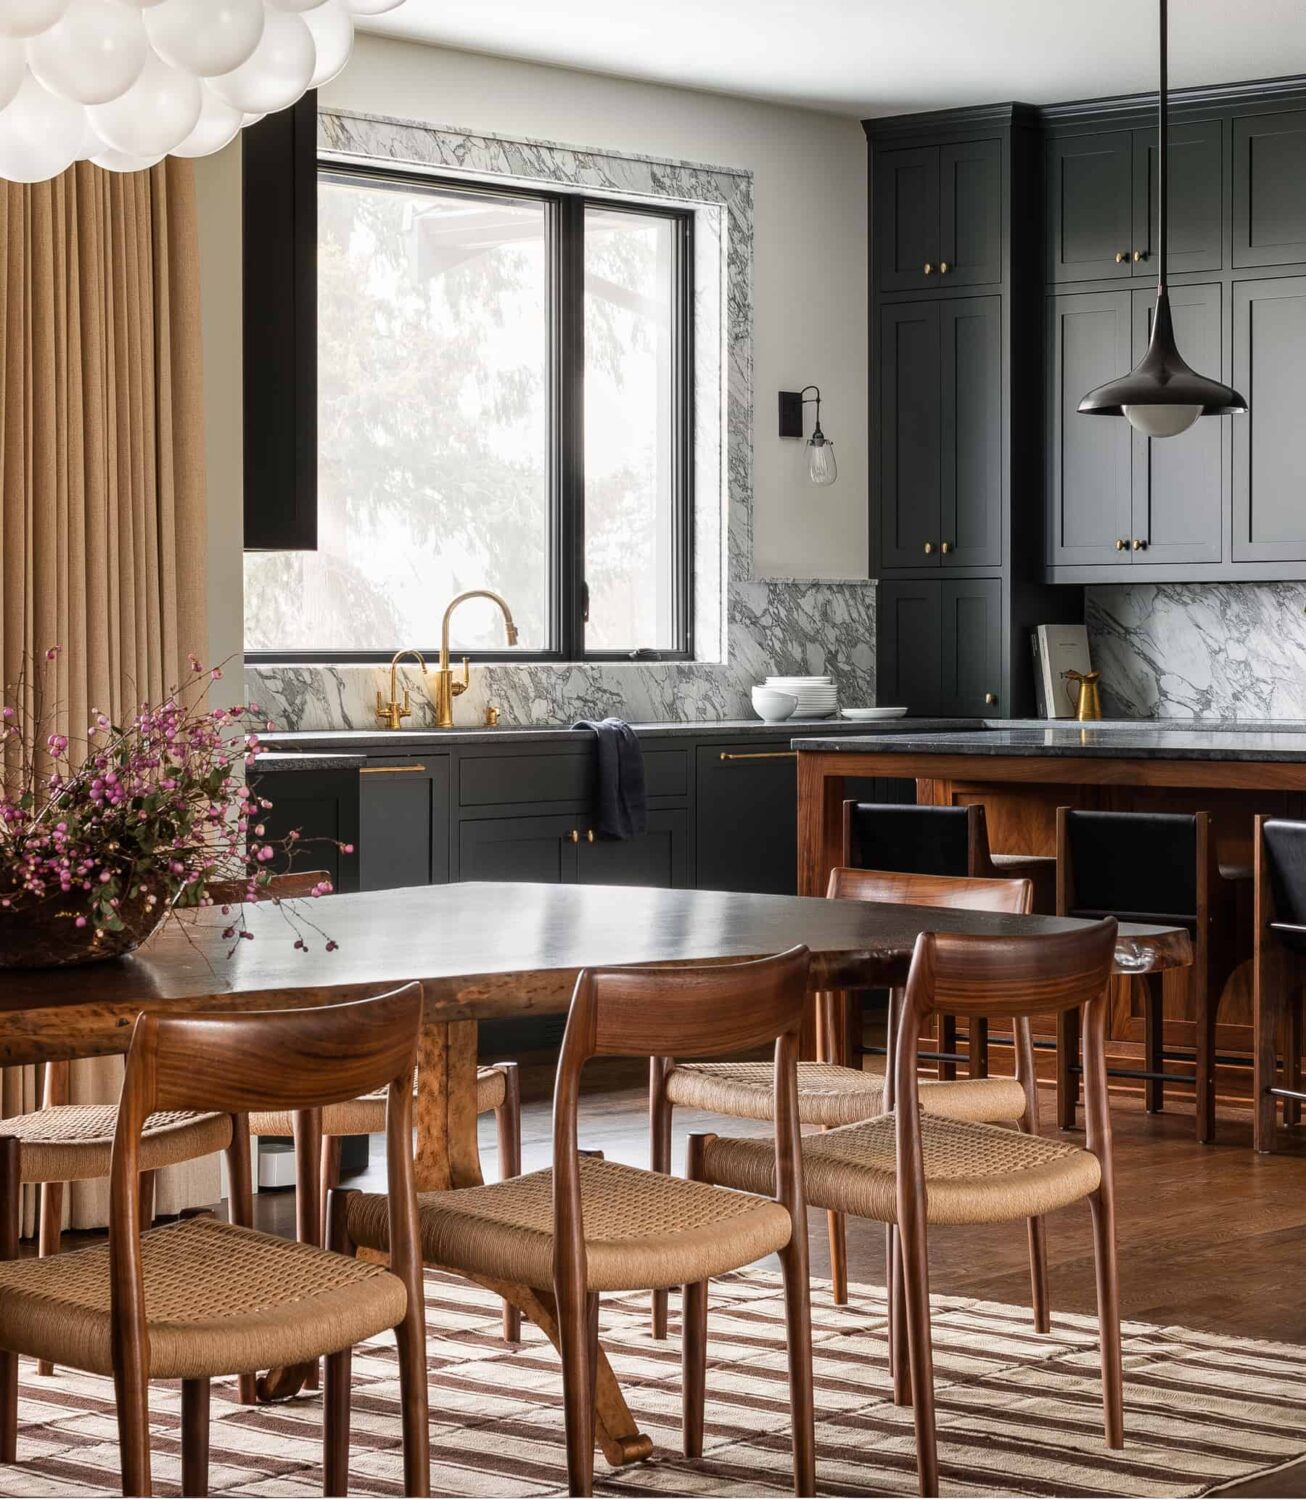 Heidi-Caillier-Design-luxury-interior-designer-dark-kitchen-marble-window